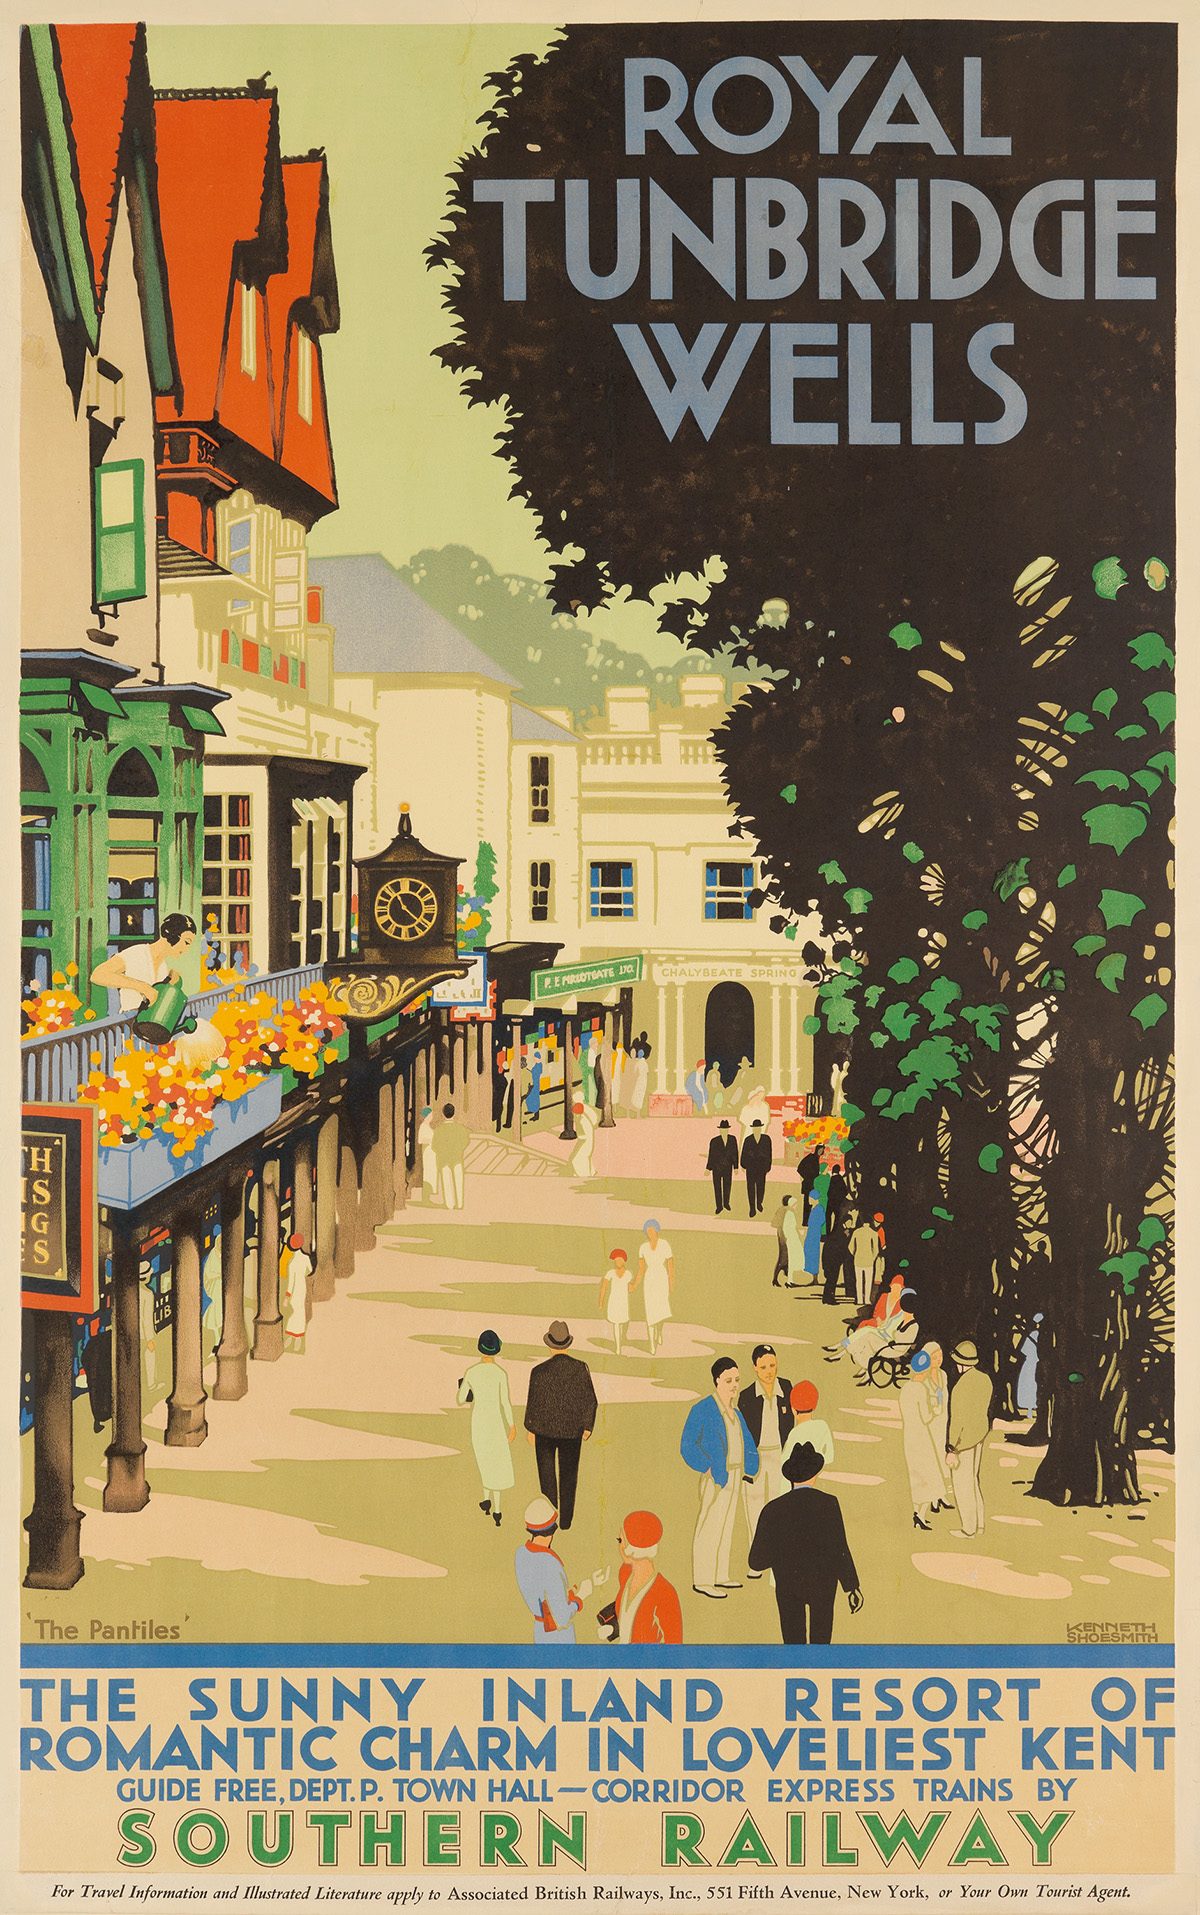 Glamorosos posters de viagem britânicos de Entre as Guerras Artes & contextos KENNETH SHOESMITH 1890 1939 ROYAL TUNBRIDGE WELLS SOUTHERN RAILWAY. 1939.